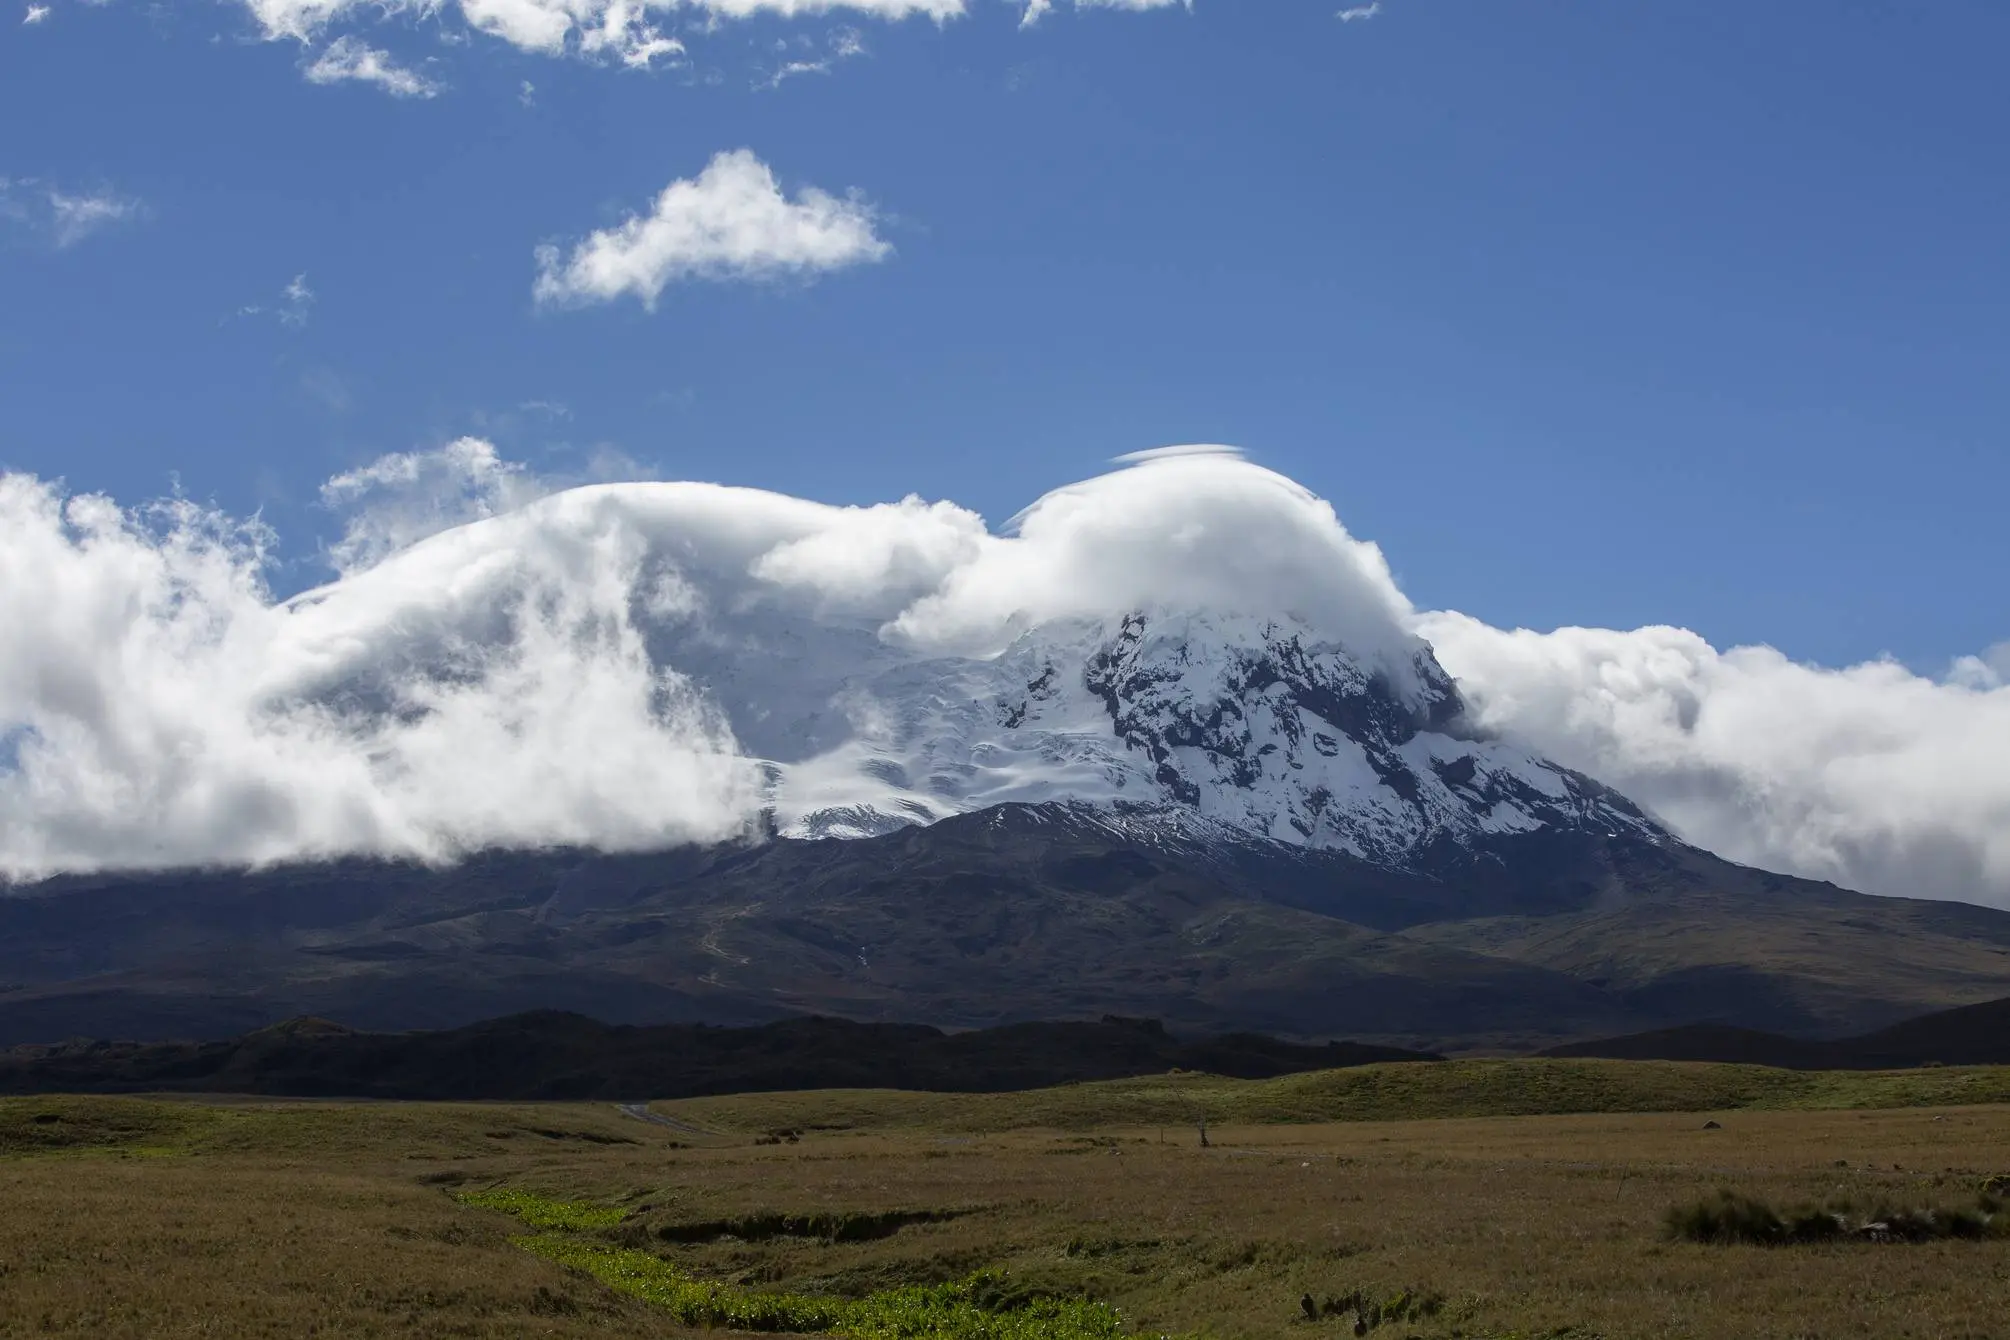 вулкан Антісана (Antisana) висотою 5752 метрів в Еквадорі